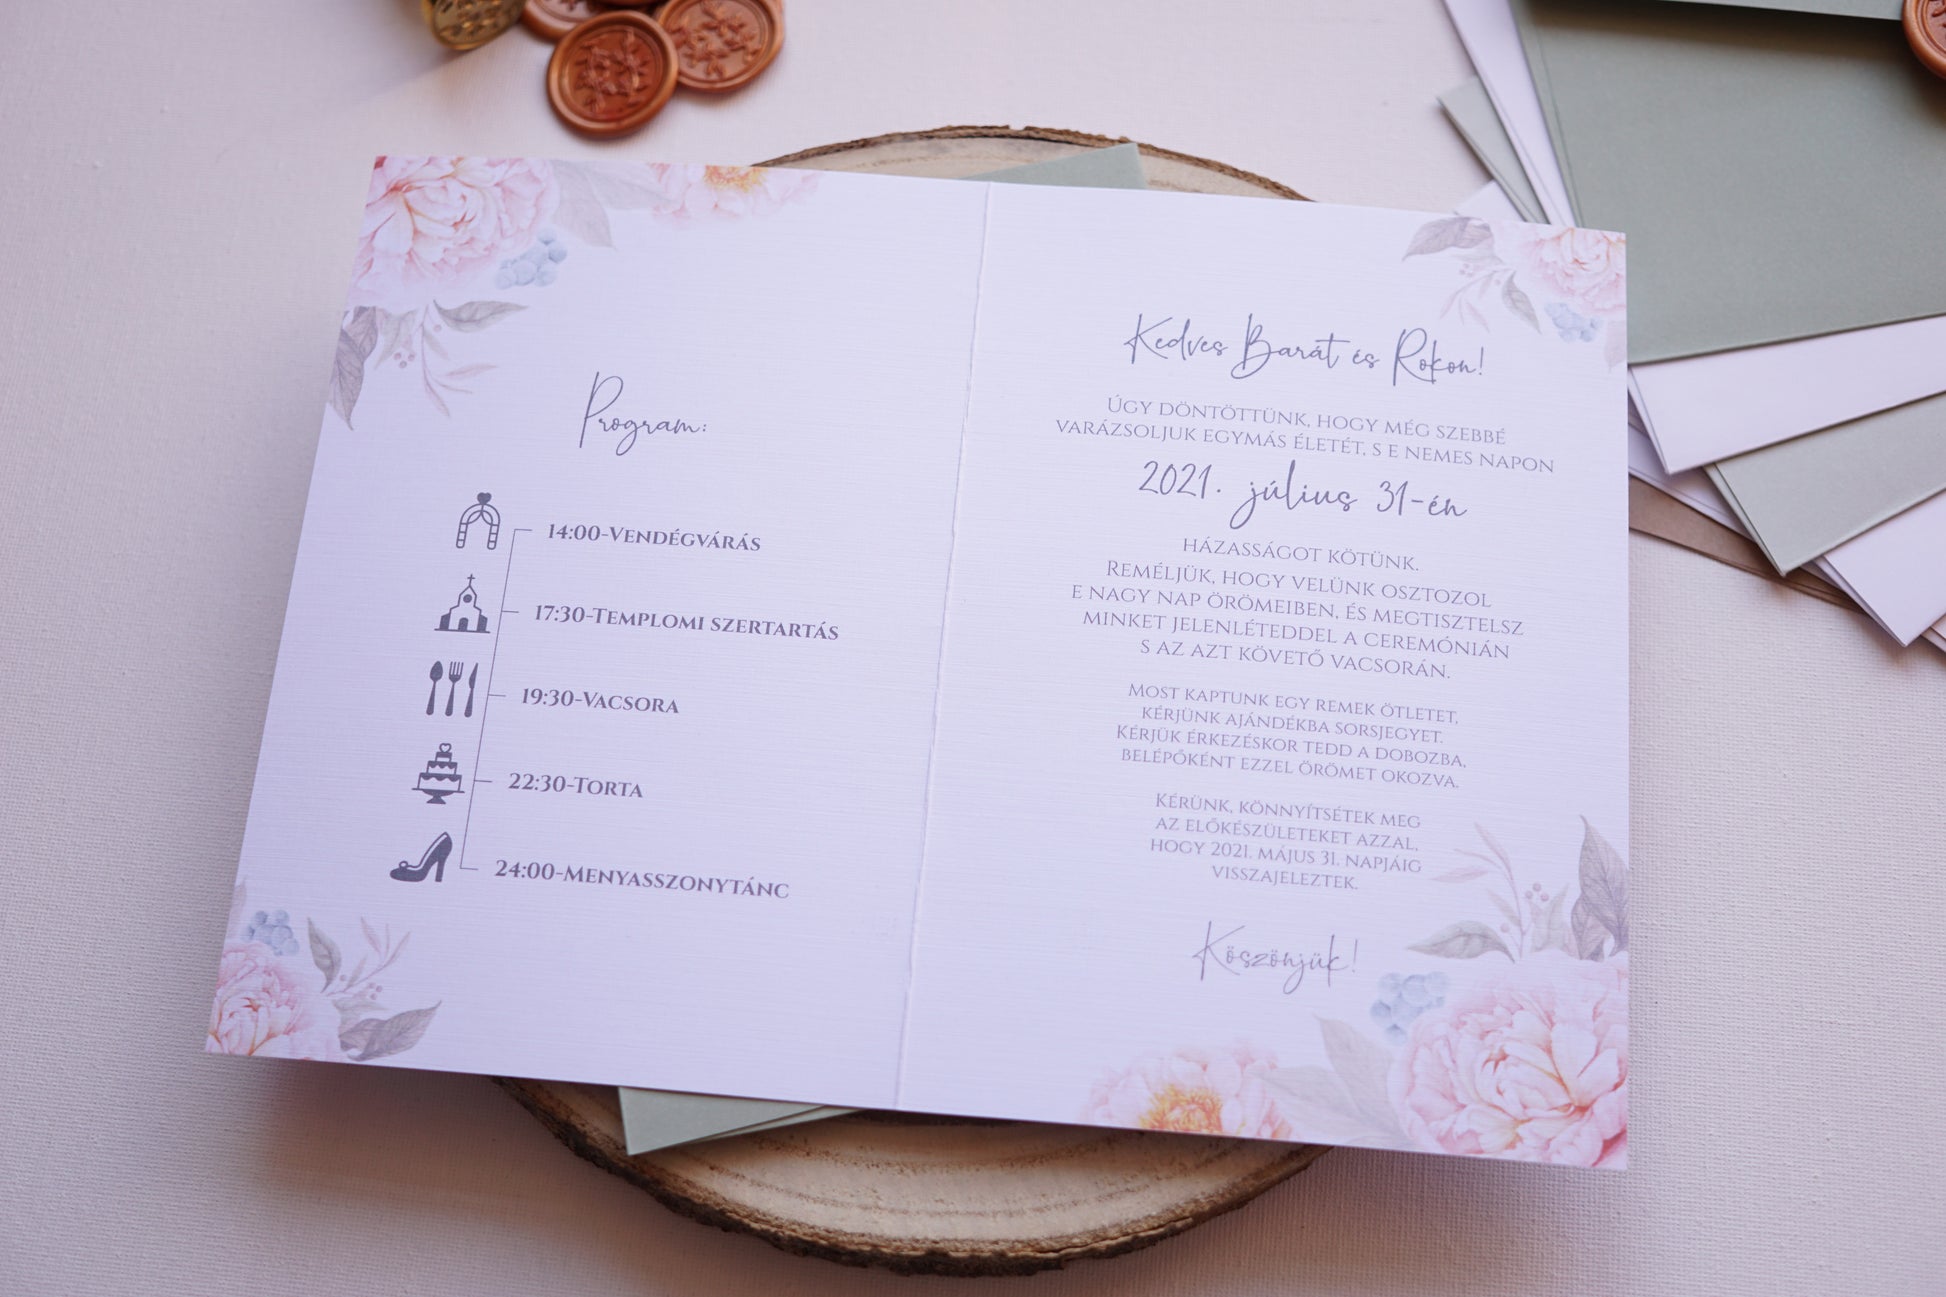 Esküvői meghívó EM11 - Kinyitható virágmintás esküvői meghívó - Erdélyi Esküvői Meghívók - Wedding invitation EM11 - Kinyitható virágmintás esküvői meghívó - invitatii de nunta EM11 - Kinyitható virágmintás esküvői meghívó